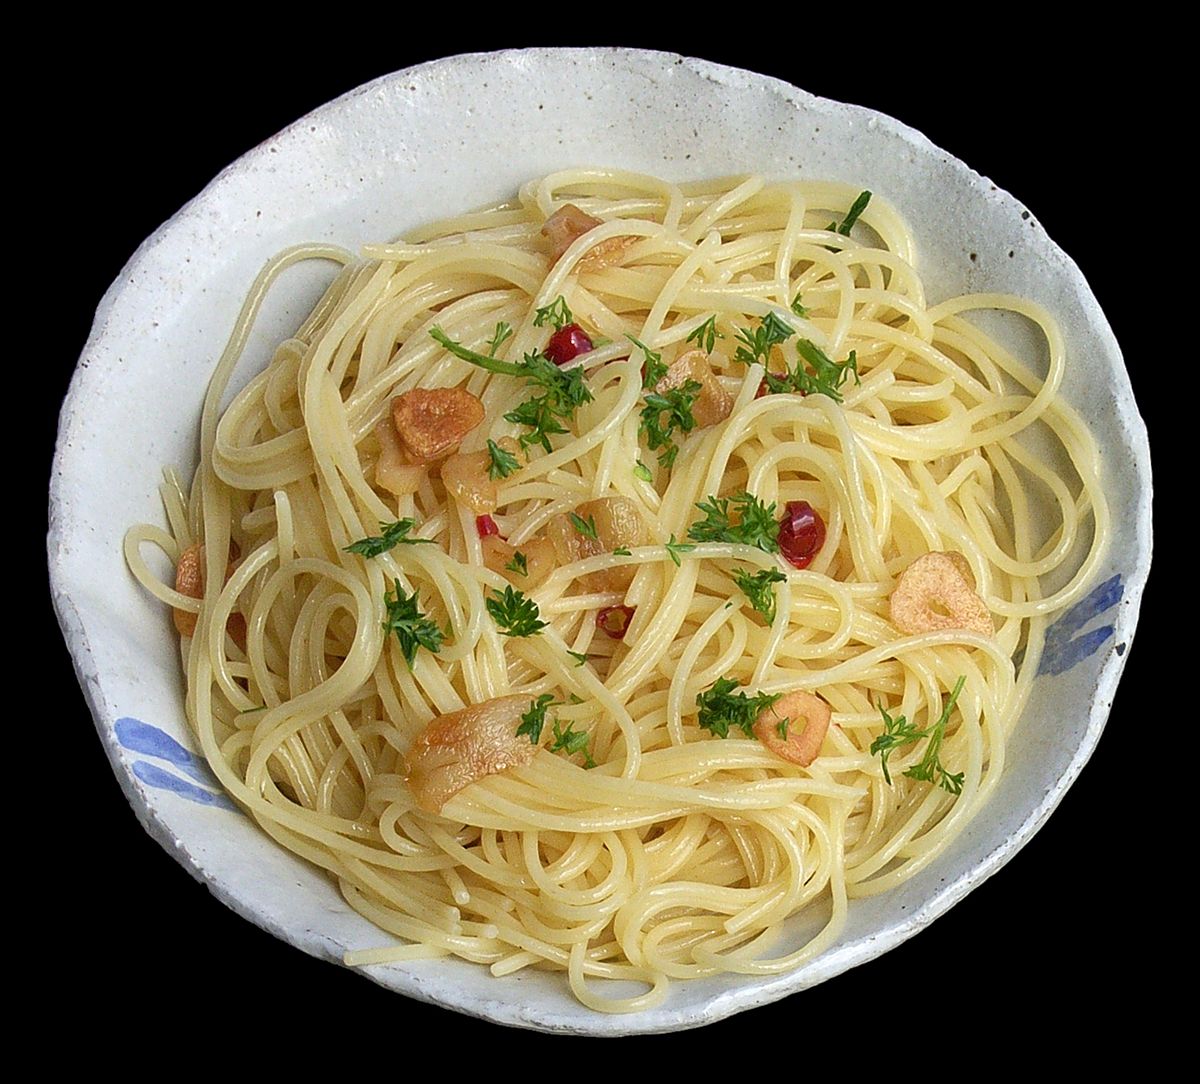 Spaghetti aglio e olio - Wikipedia